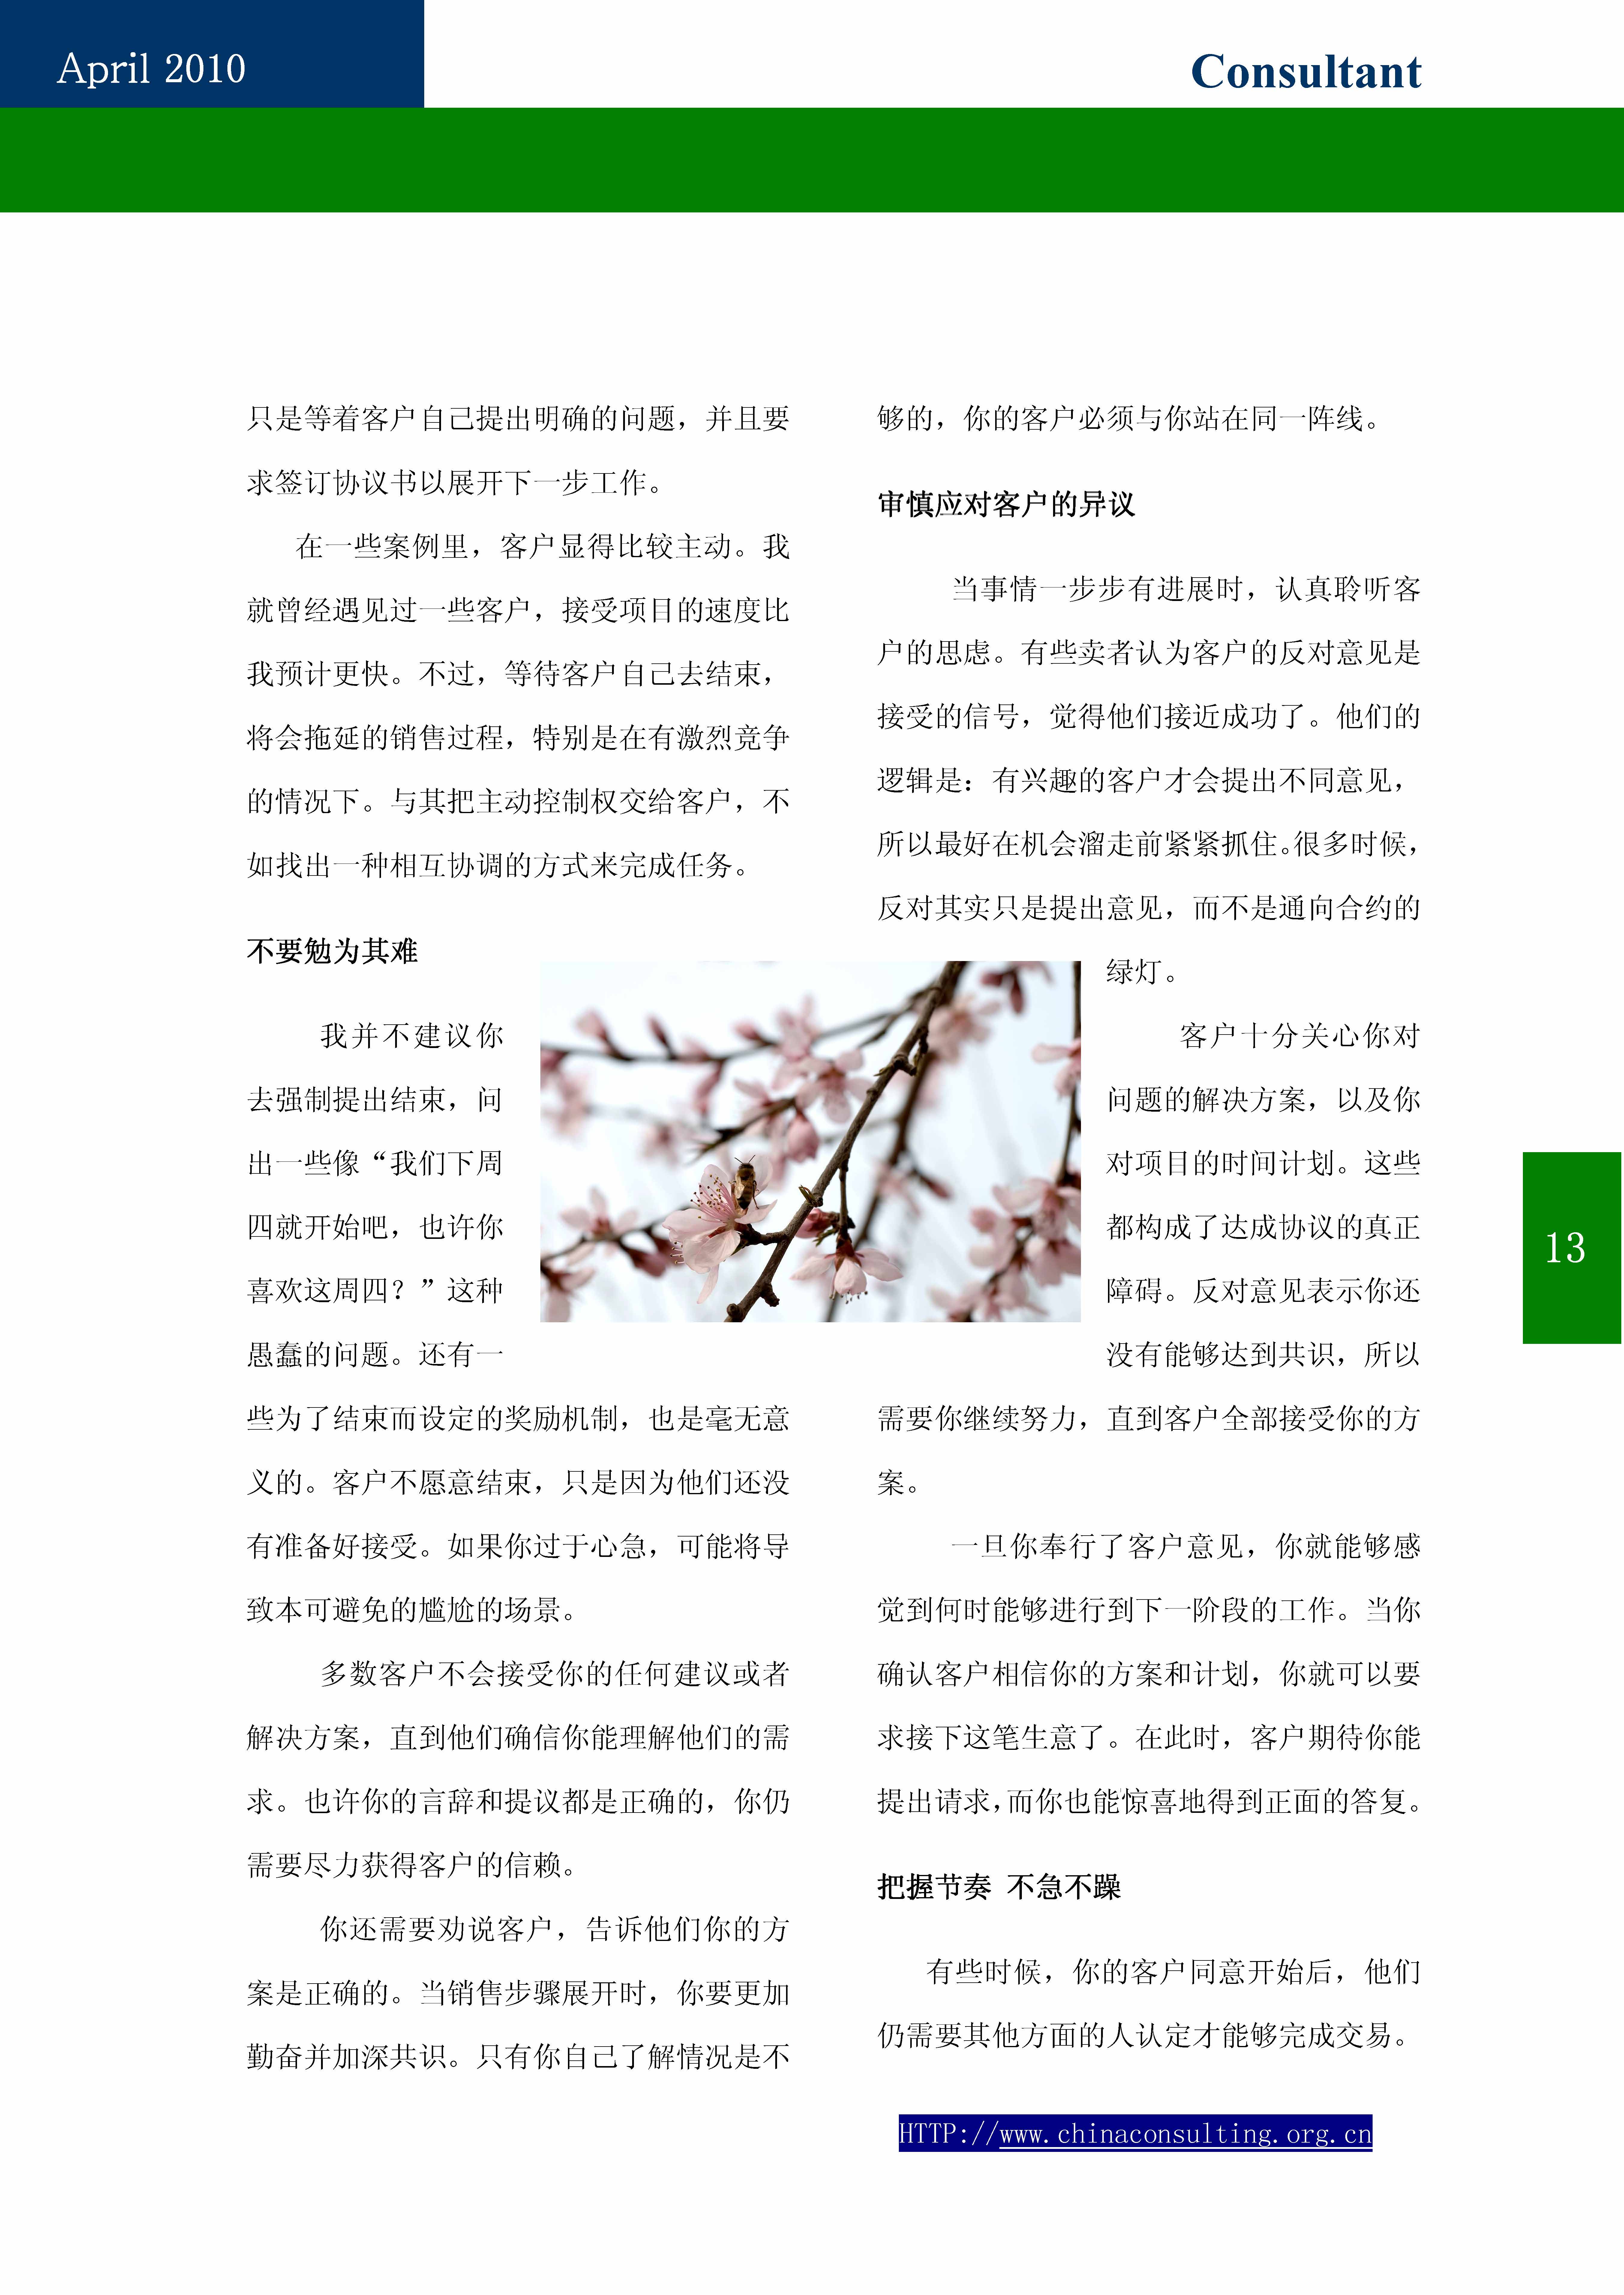 9中国科技咨询协会第九期会刊_页面_15.jpg